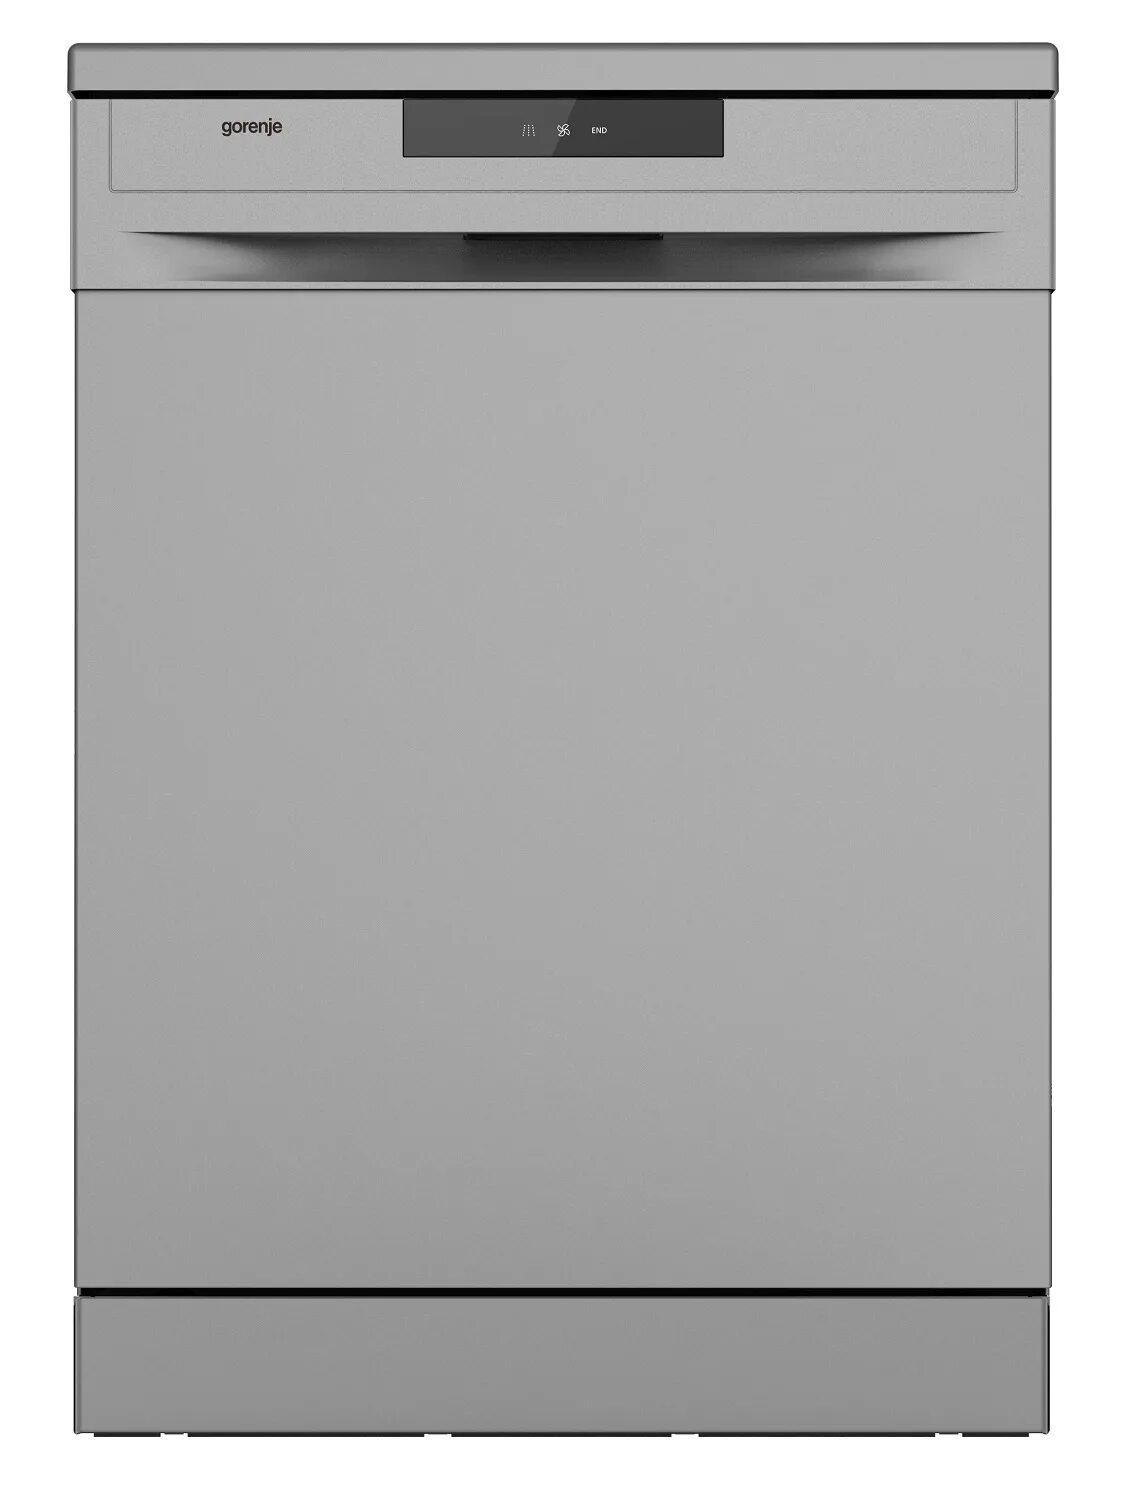 Пмм горенье. Посудомоечная машина Gorenje gs520e15s. Посудомоечная машина Gorenje gs52040s. Посудомоечная машина Gorenje gs52010s. Посудомойка Gorenje gs531e10w.